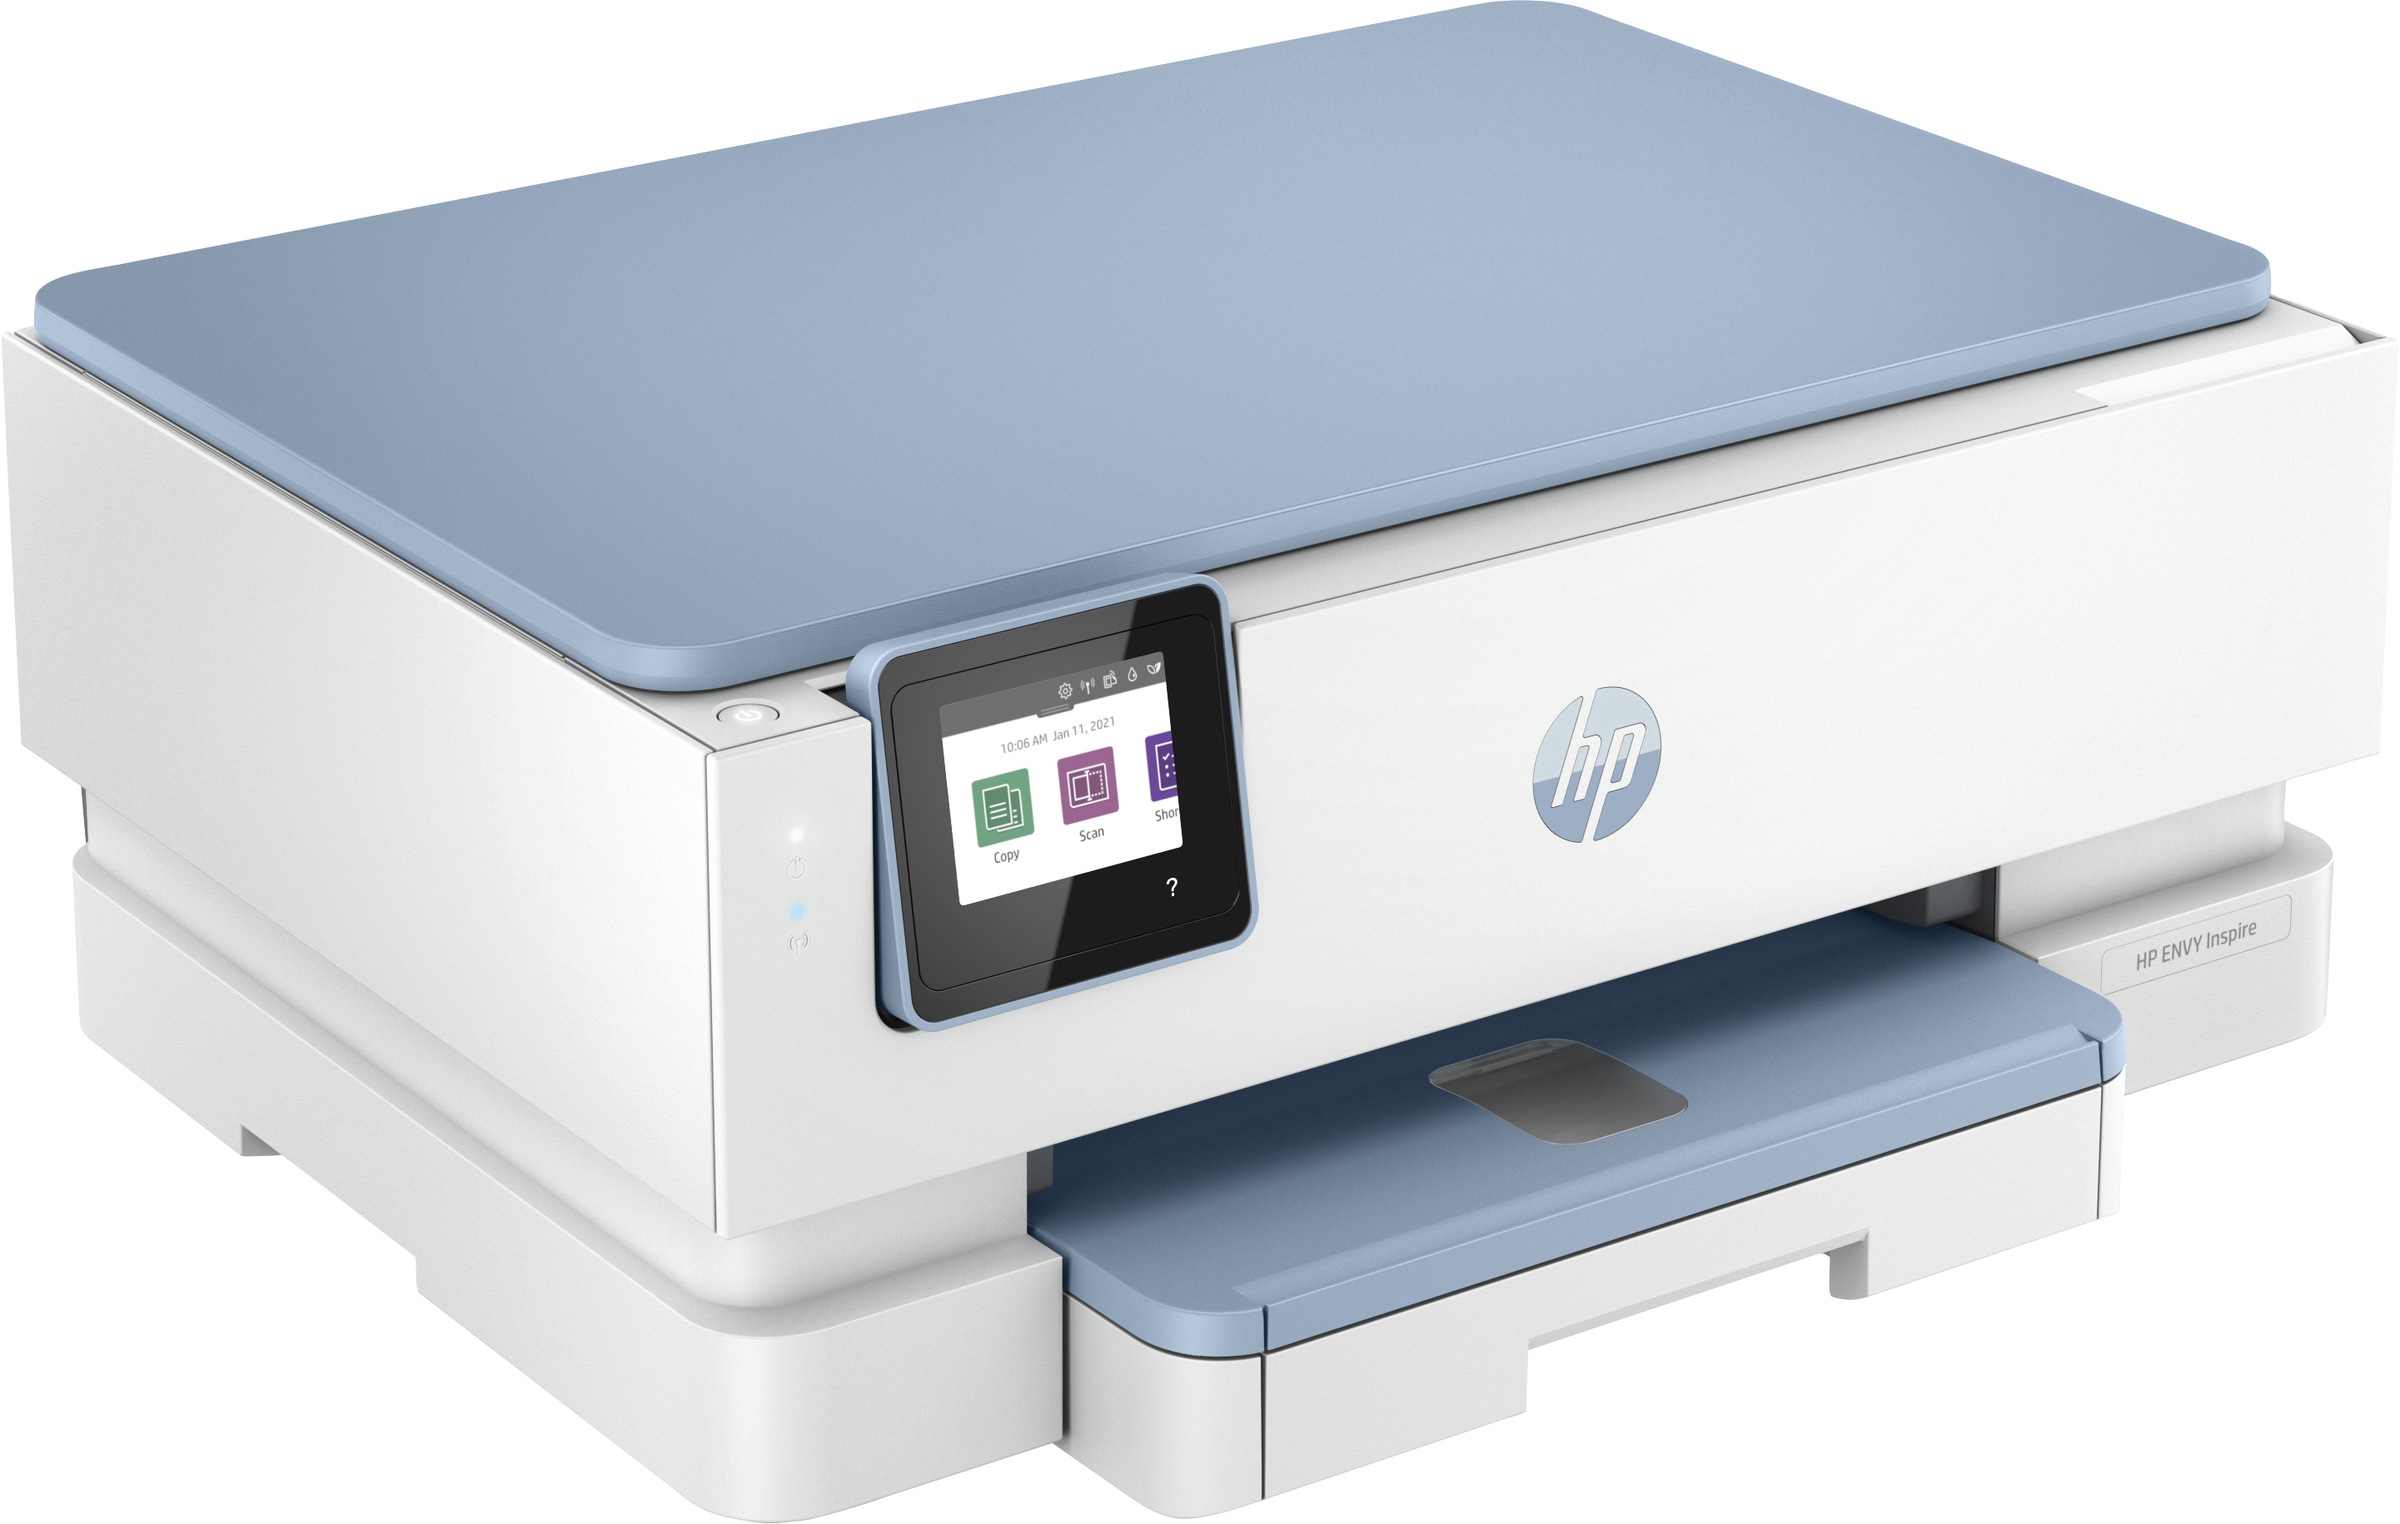 Inspire 7221e«, »Envy BAUR | Ink HP HP+ kompatibel Instant Multifunktionsdrucker